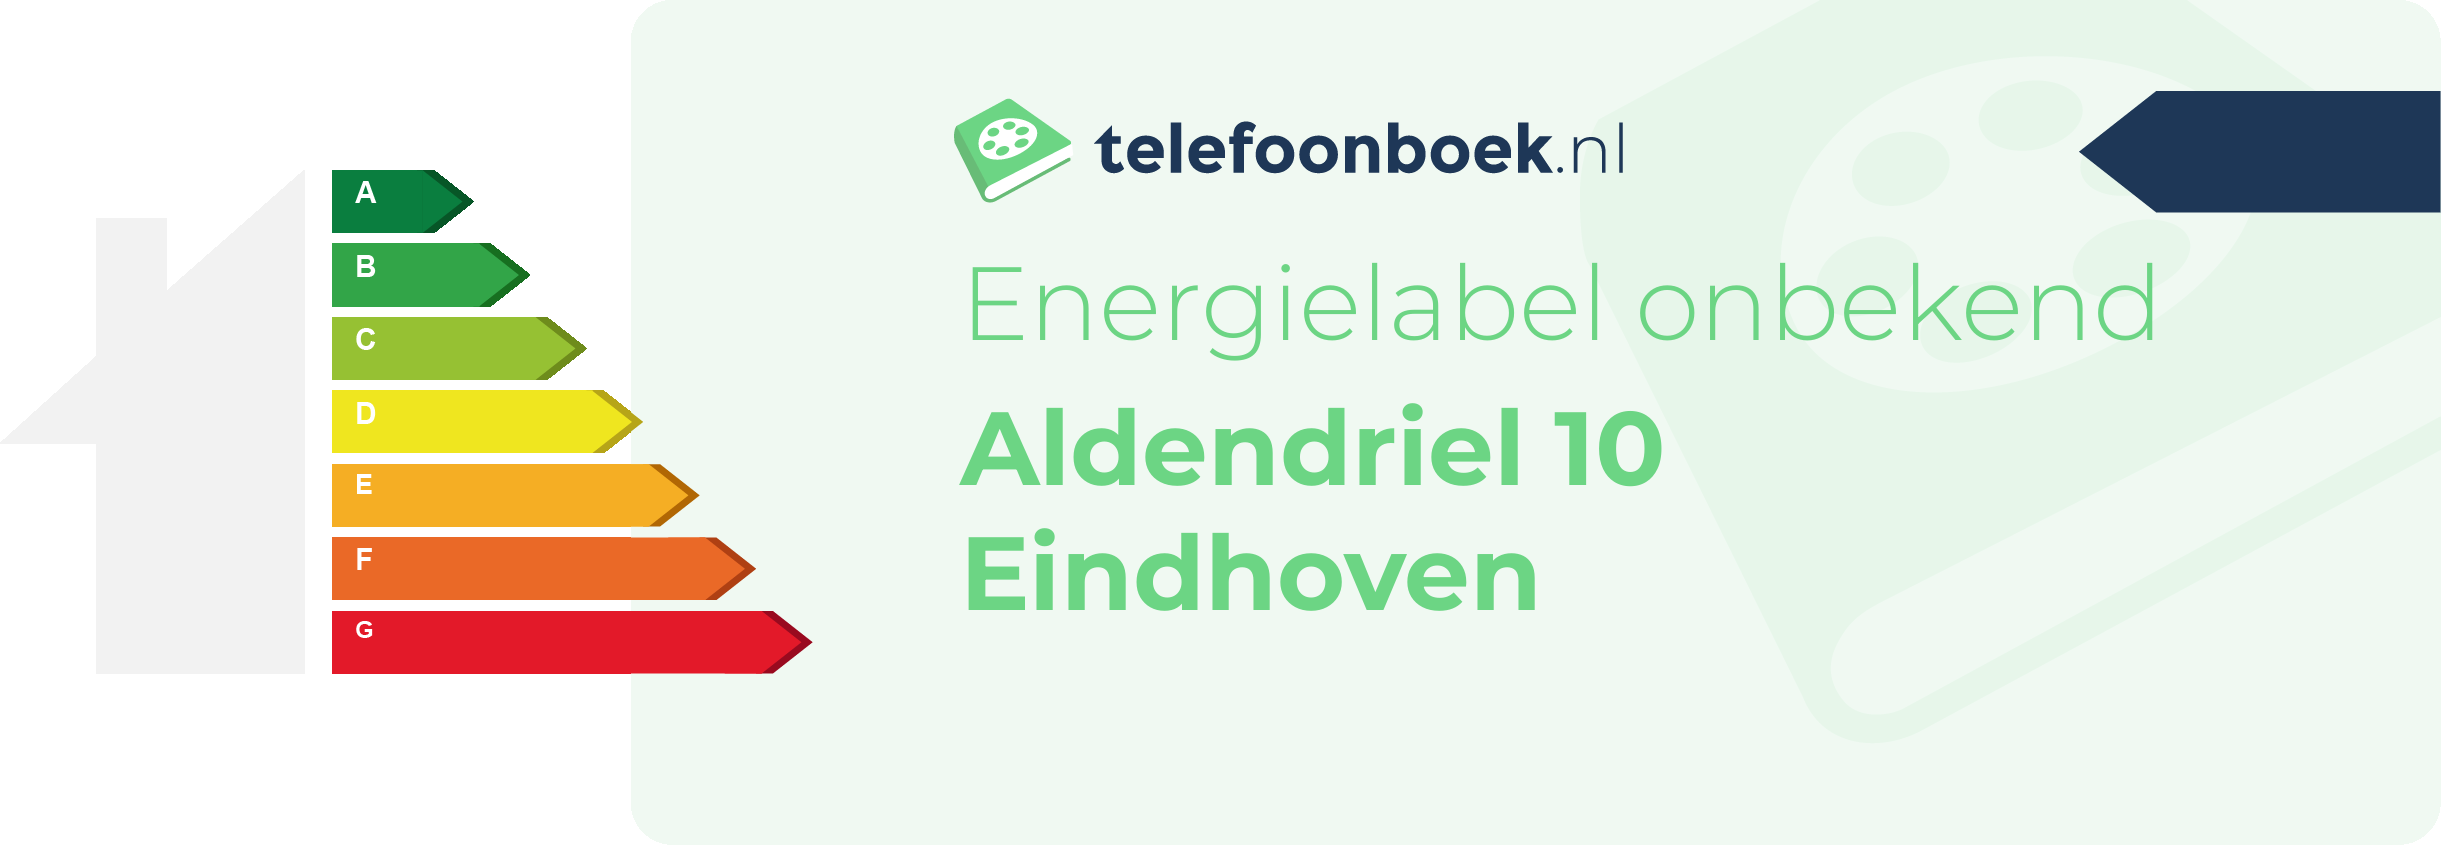 Energielabel Aldendriel 10 Eindhoven